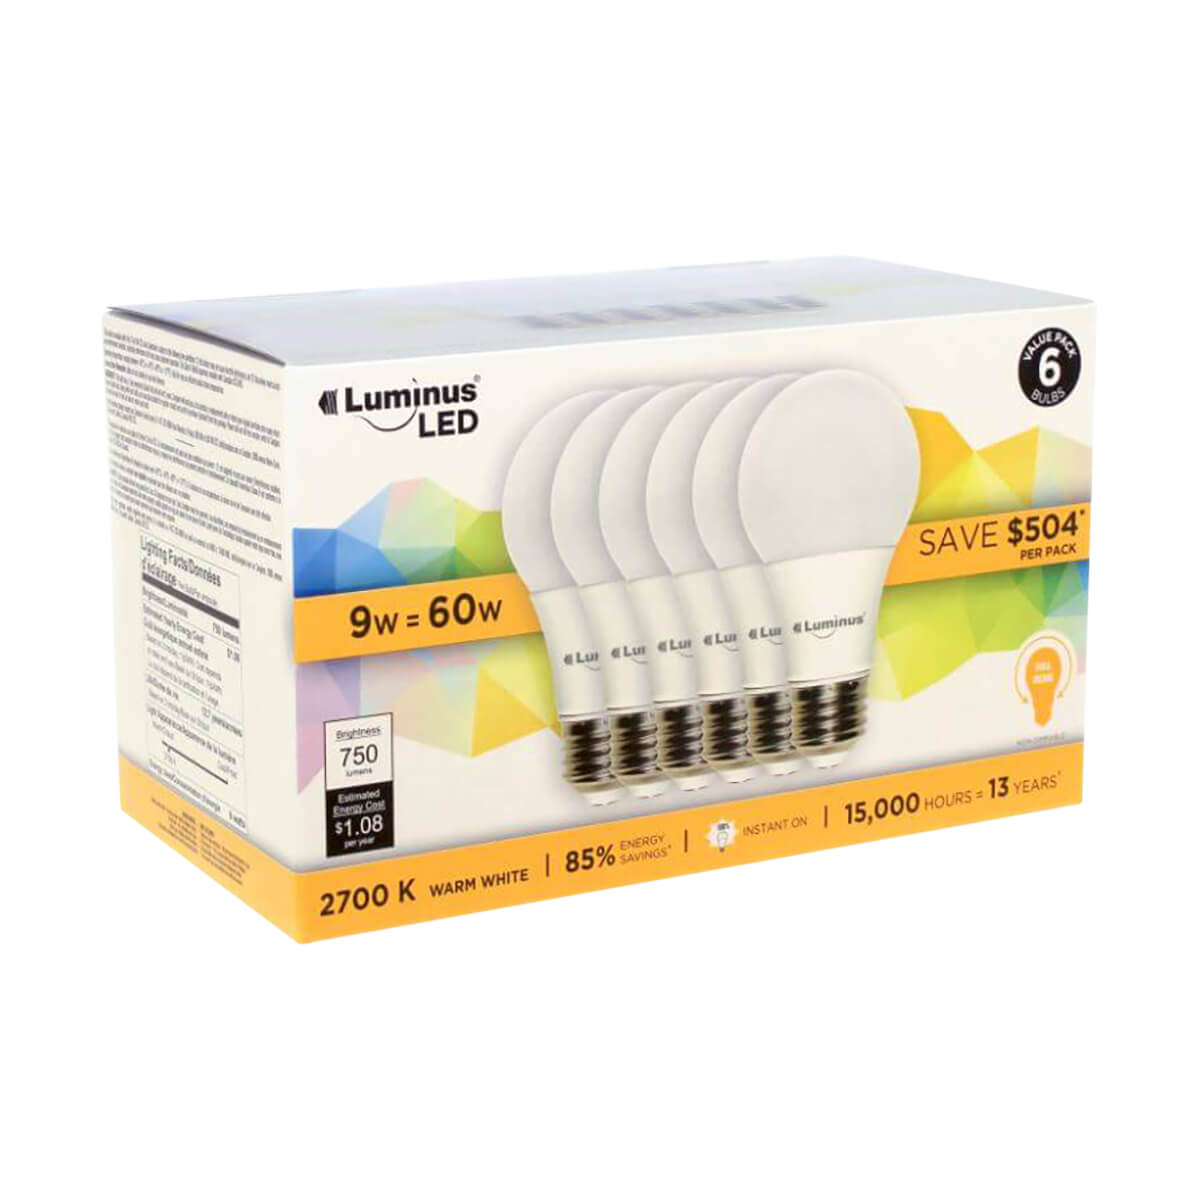 Luminus LED Light Bulbs - Soft White - 6 Pack